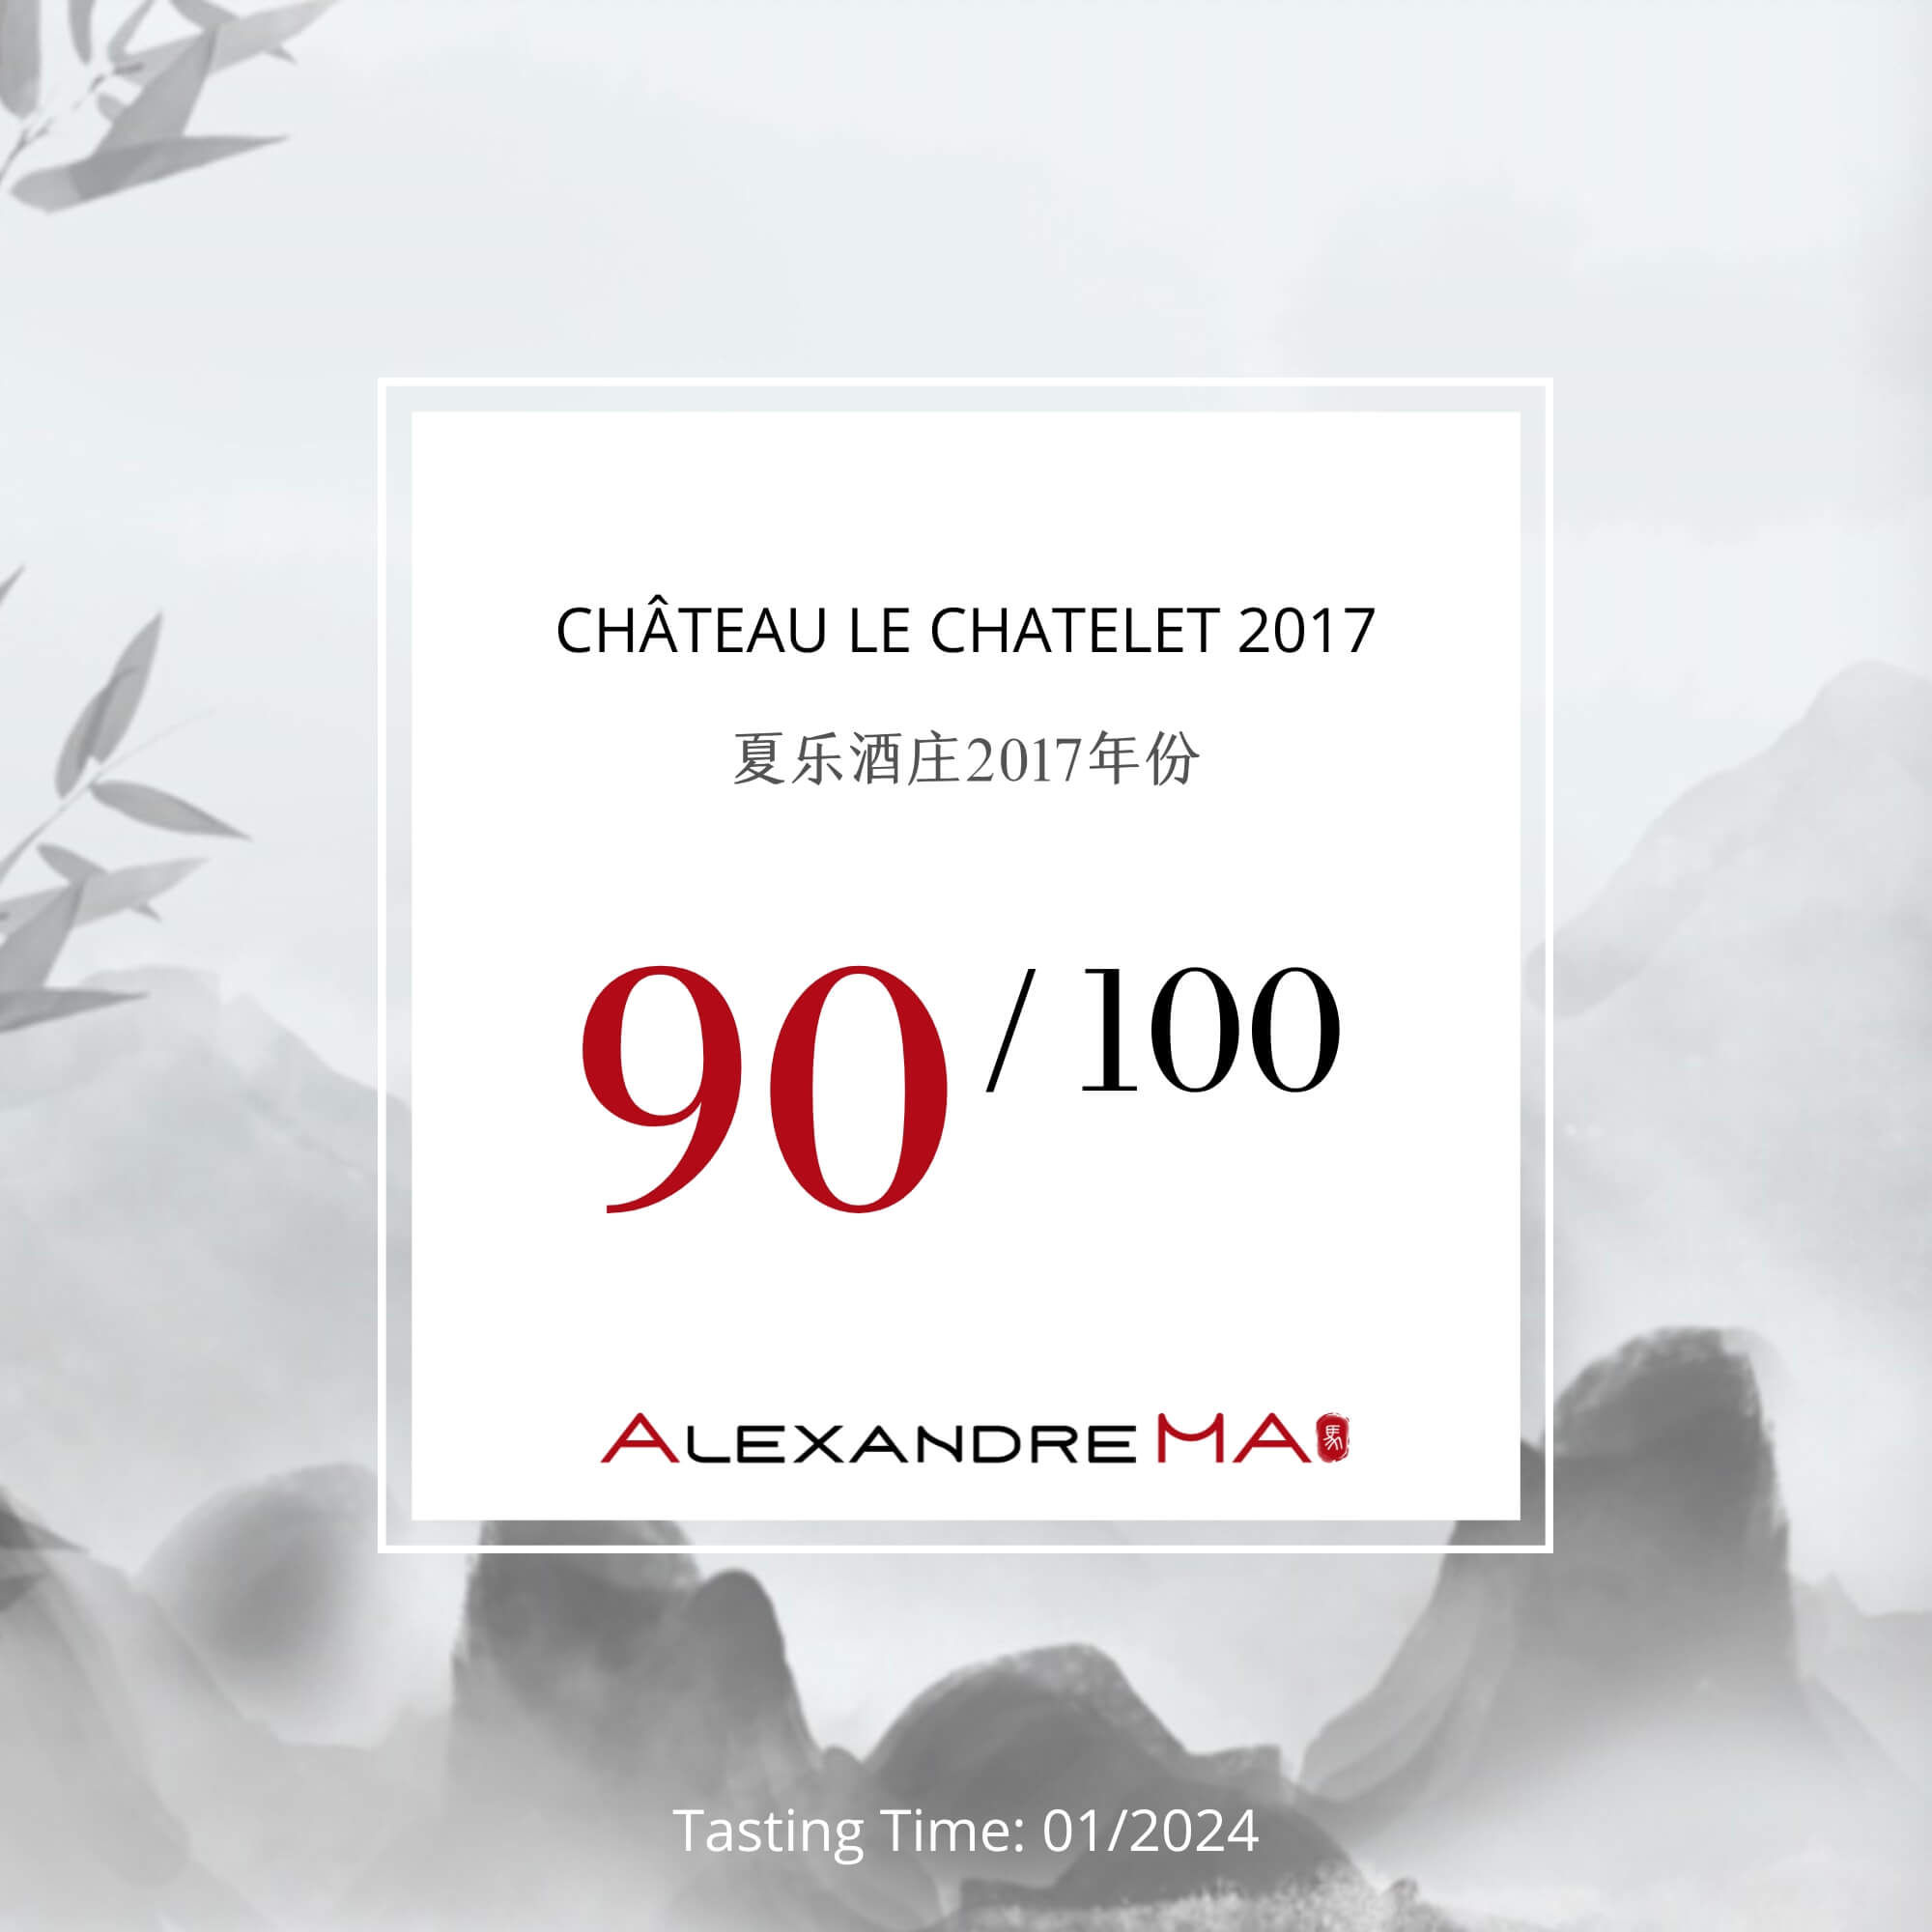 Château Le Chatelet 2017 - Alexandre MA